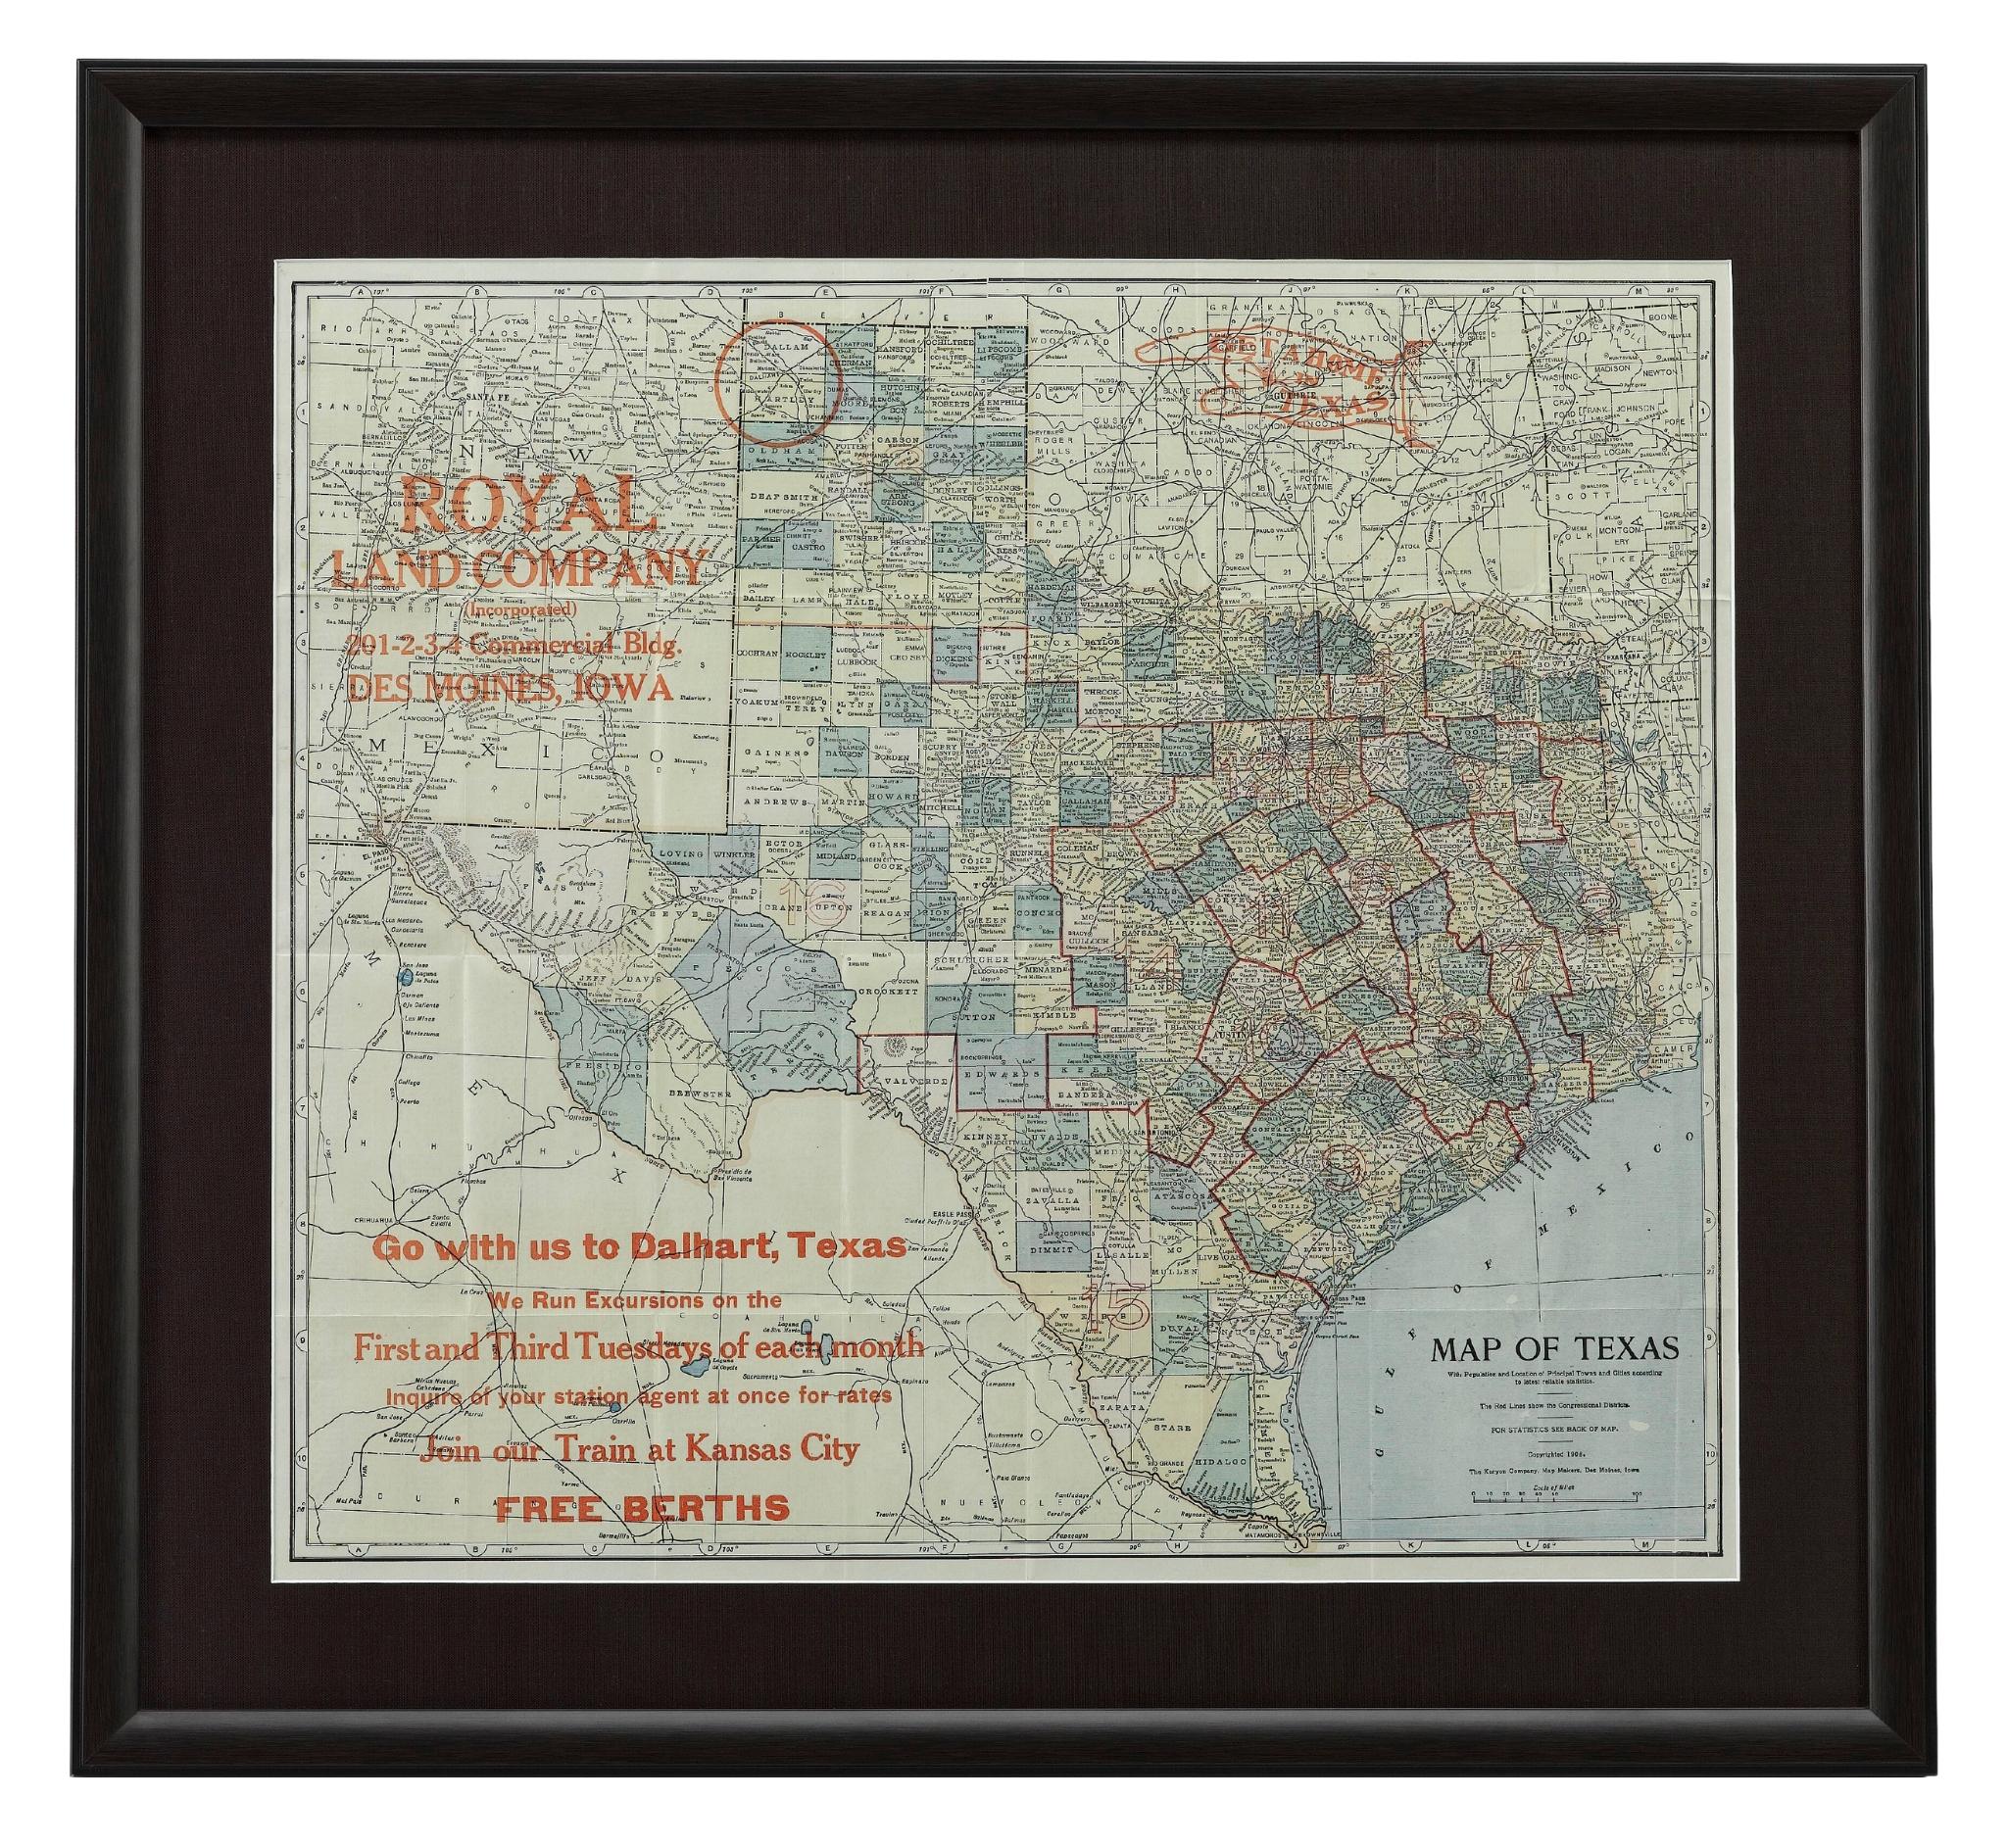 Voici une carte ancienne de l'État du Texas, imprimée comme carte de poche en 1908 par The Kenyon Company. La carte de l'État présente des couleurs vives par comté, avec une liste des principales villes et localités. Les circonscriptions électorales